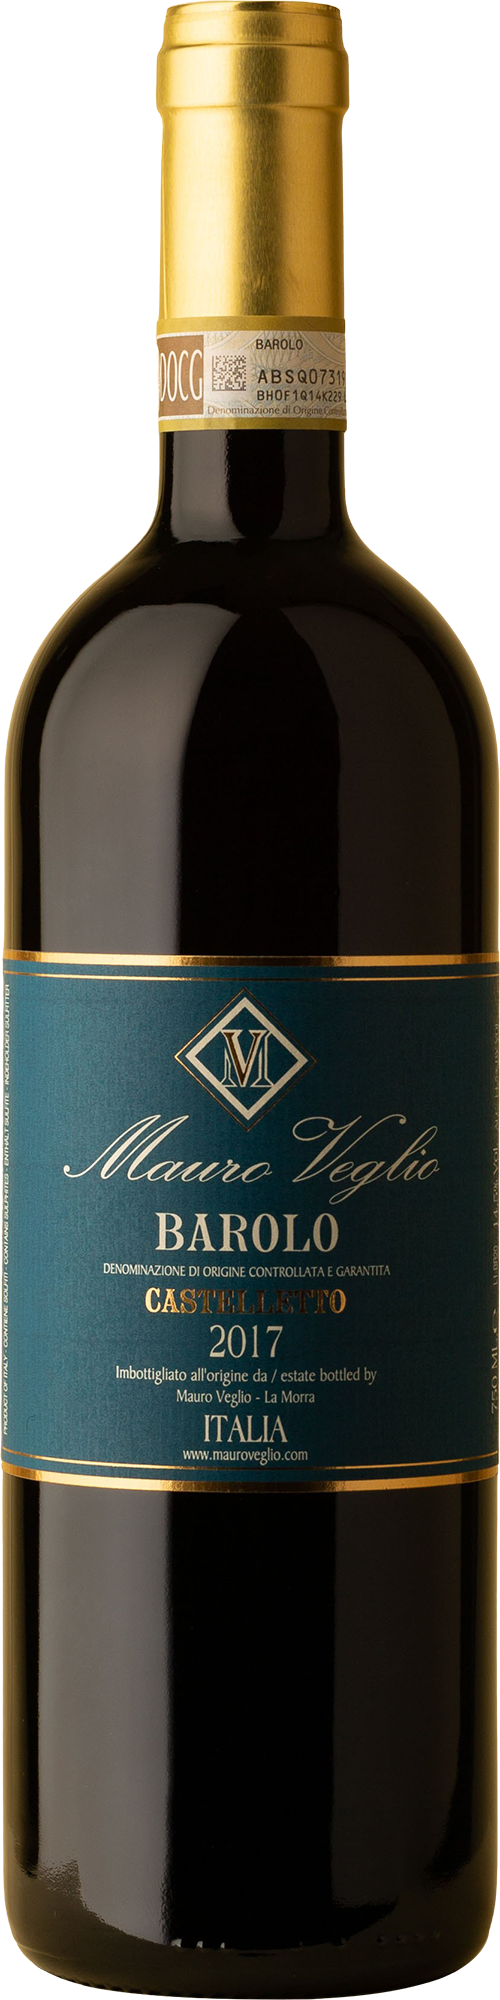 Mauro Veglio - Barolo Castelletto Nebbiolo 2017 Red Wine